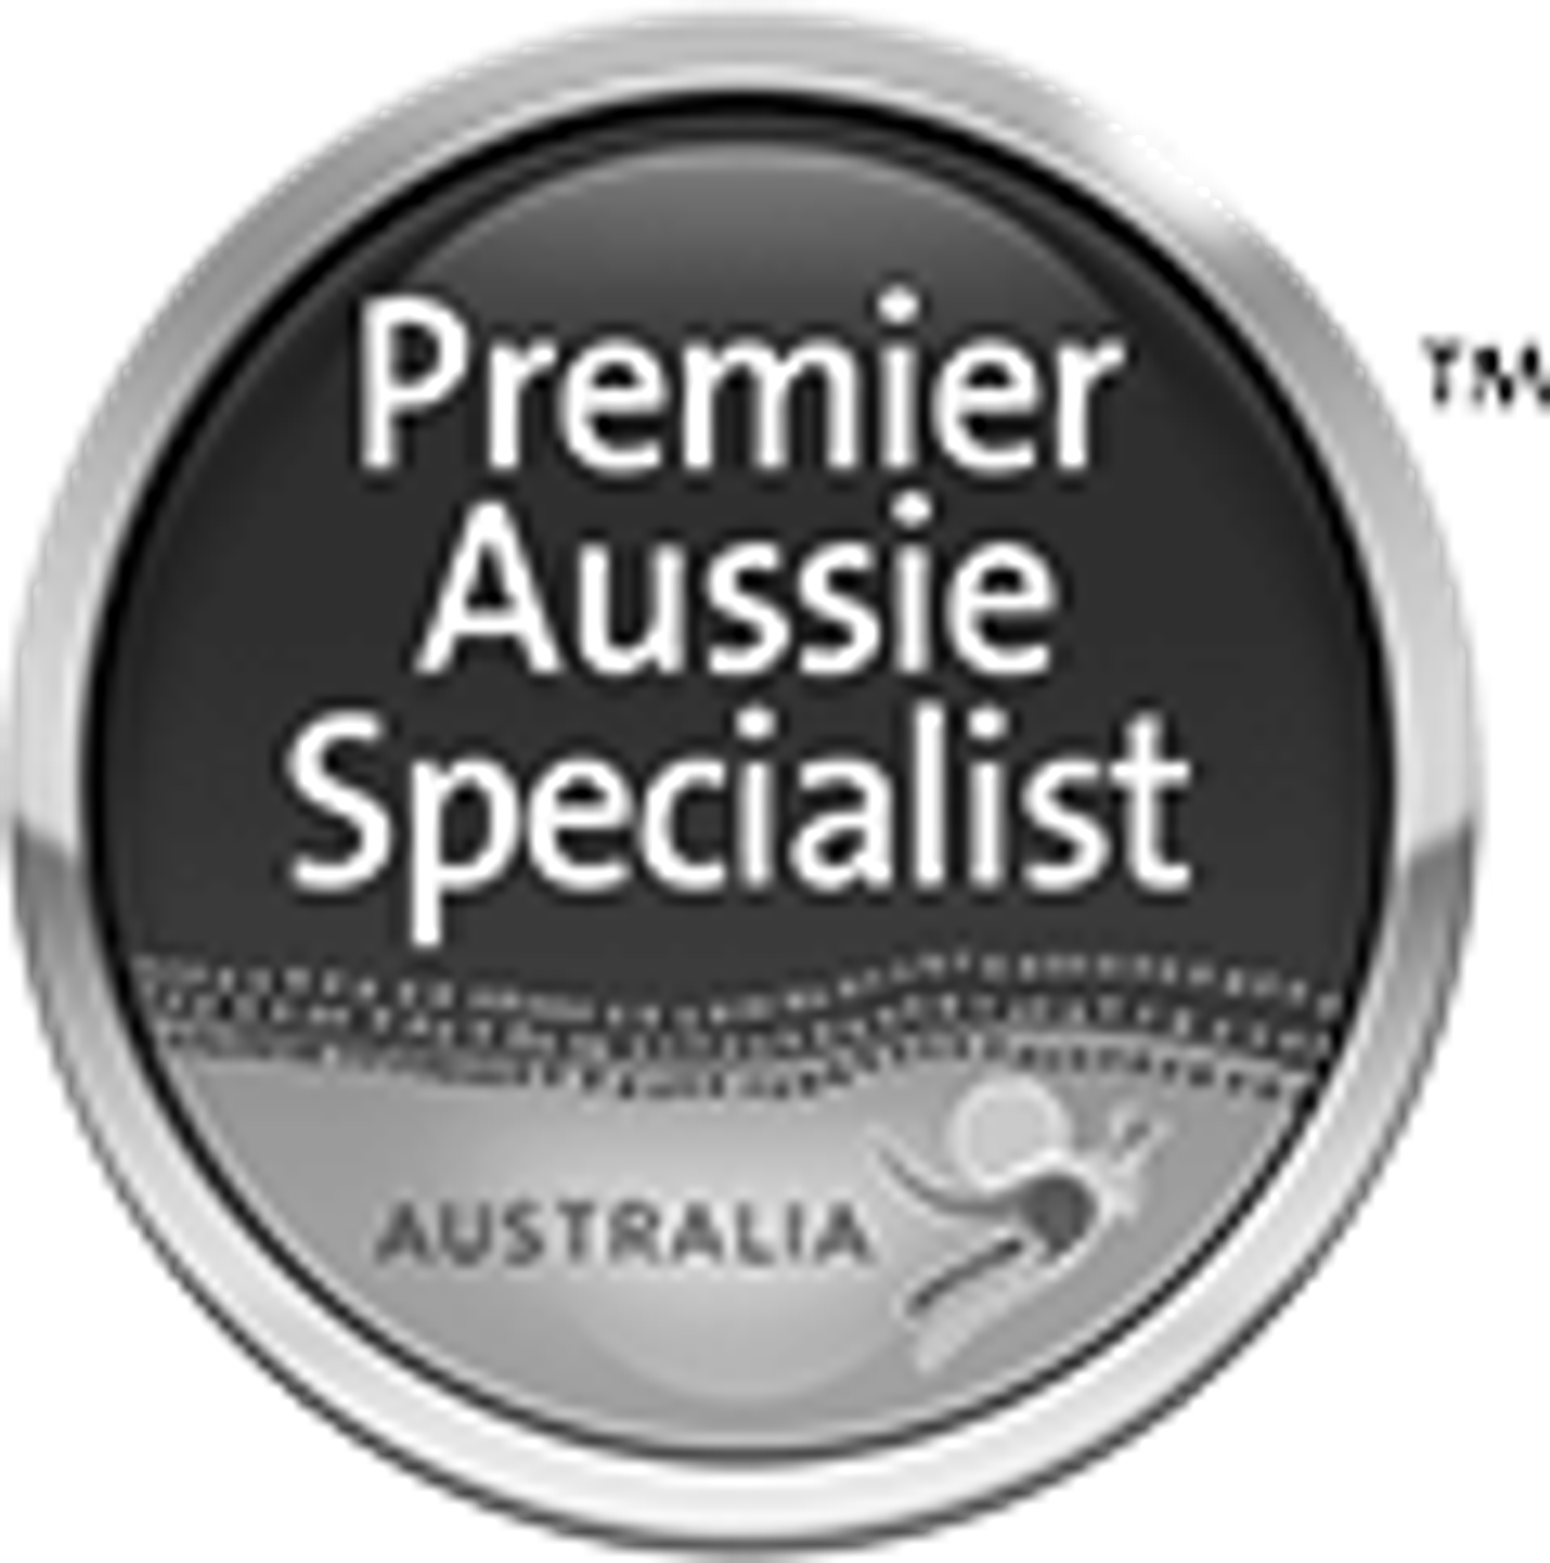 Premier Aussie Specialist